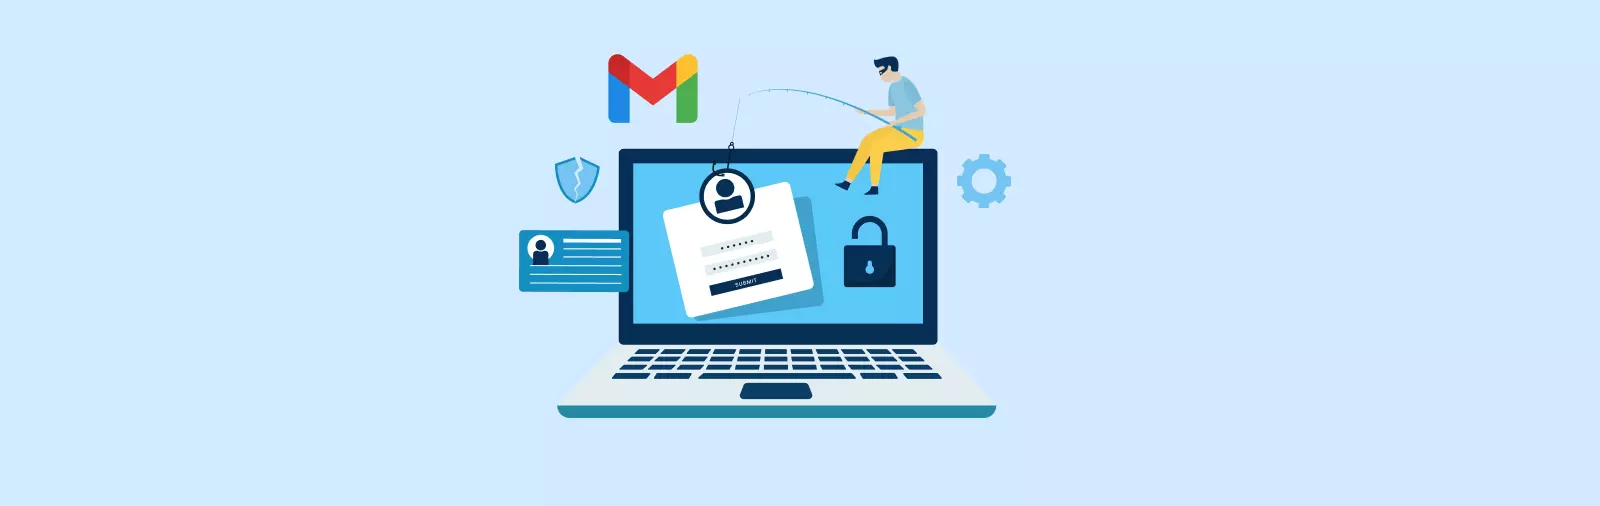 Jak poznat online podvody a phishing?